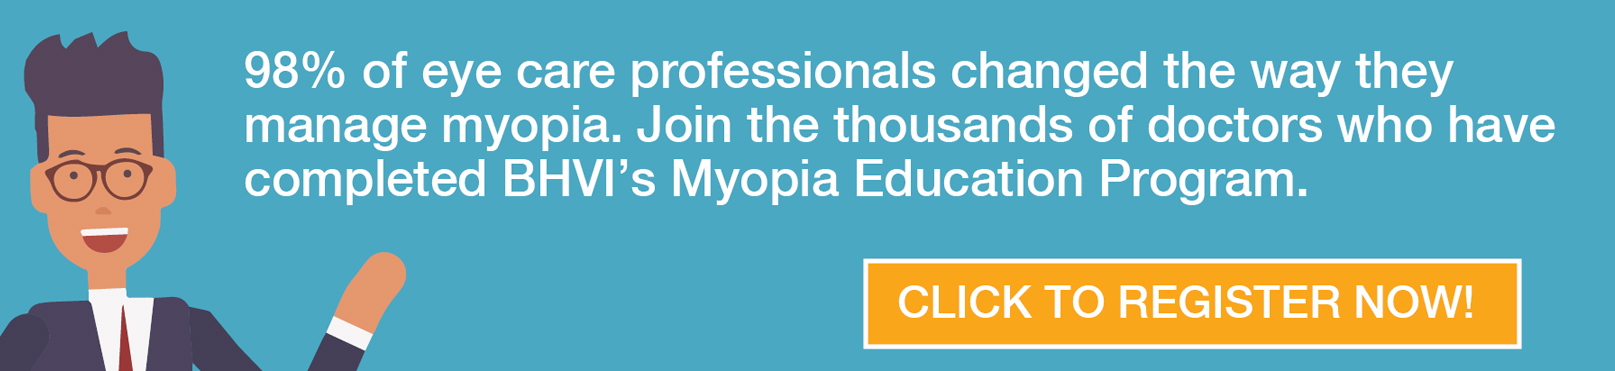 myopia education program)